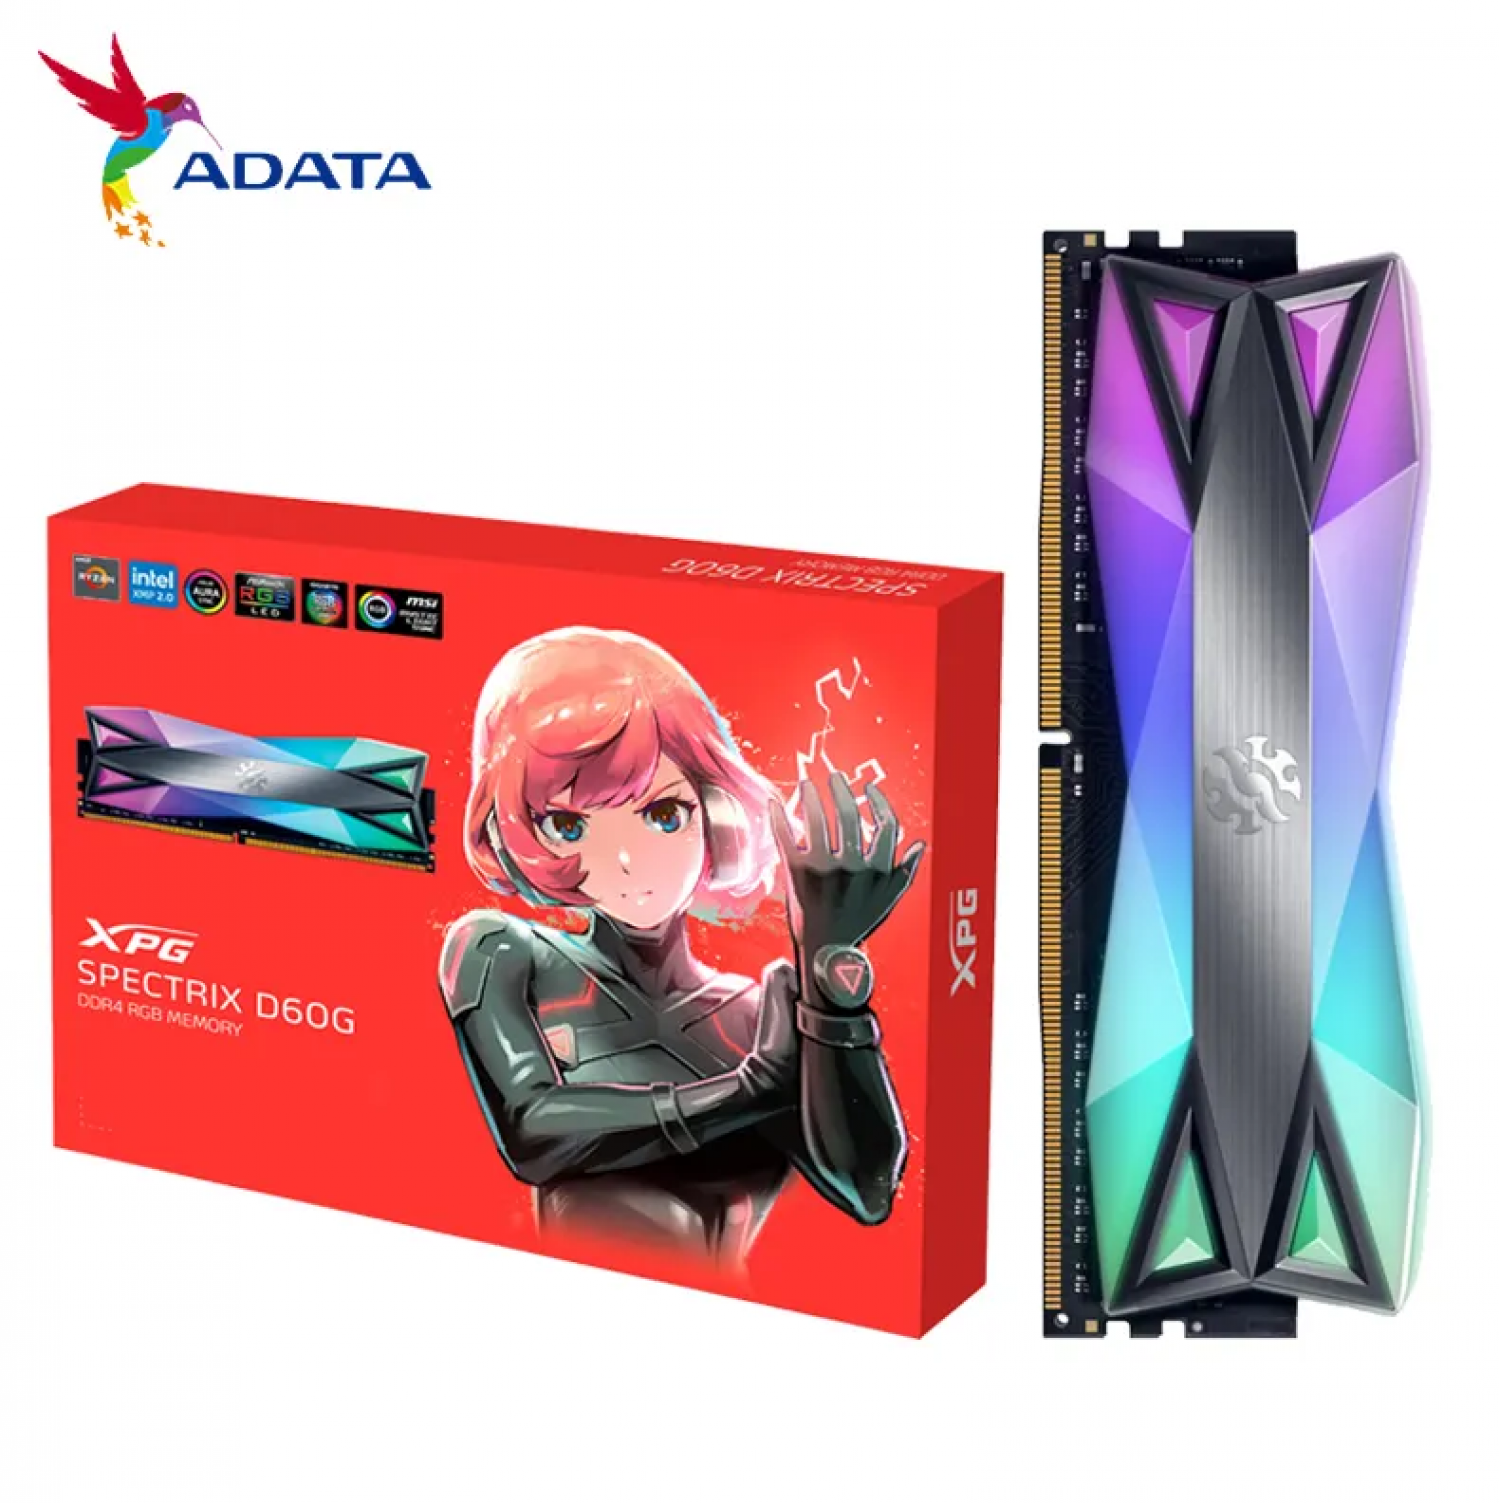 MEMORIA RAM ADATA XPG SPECTRIX D60 RGB 8GB DDR4 3200